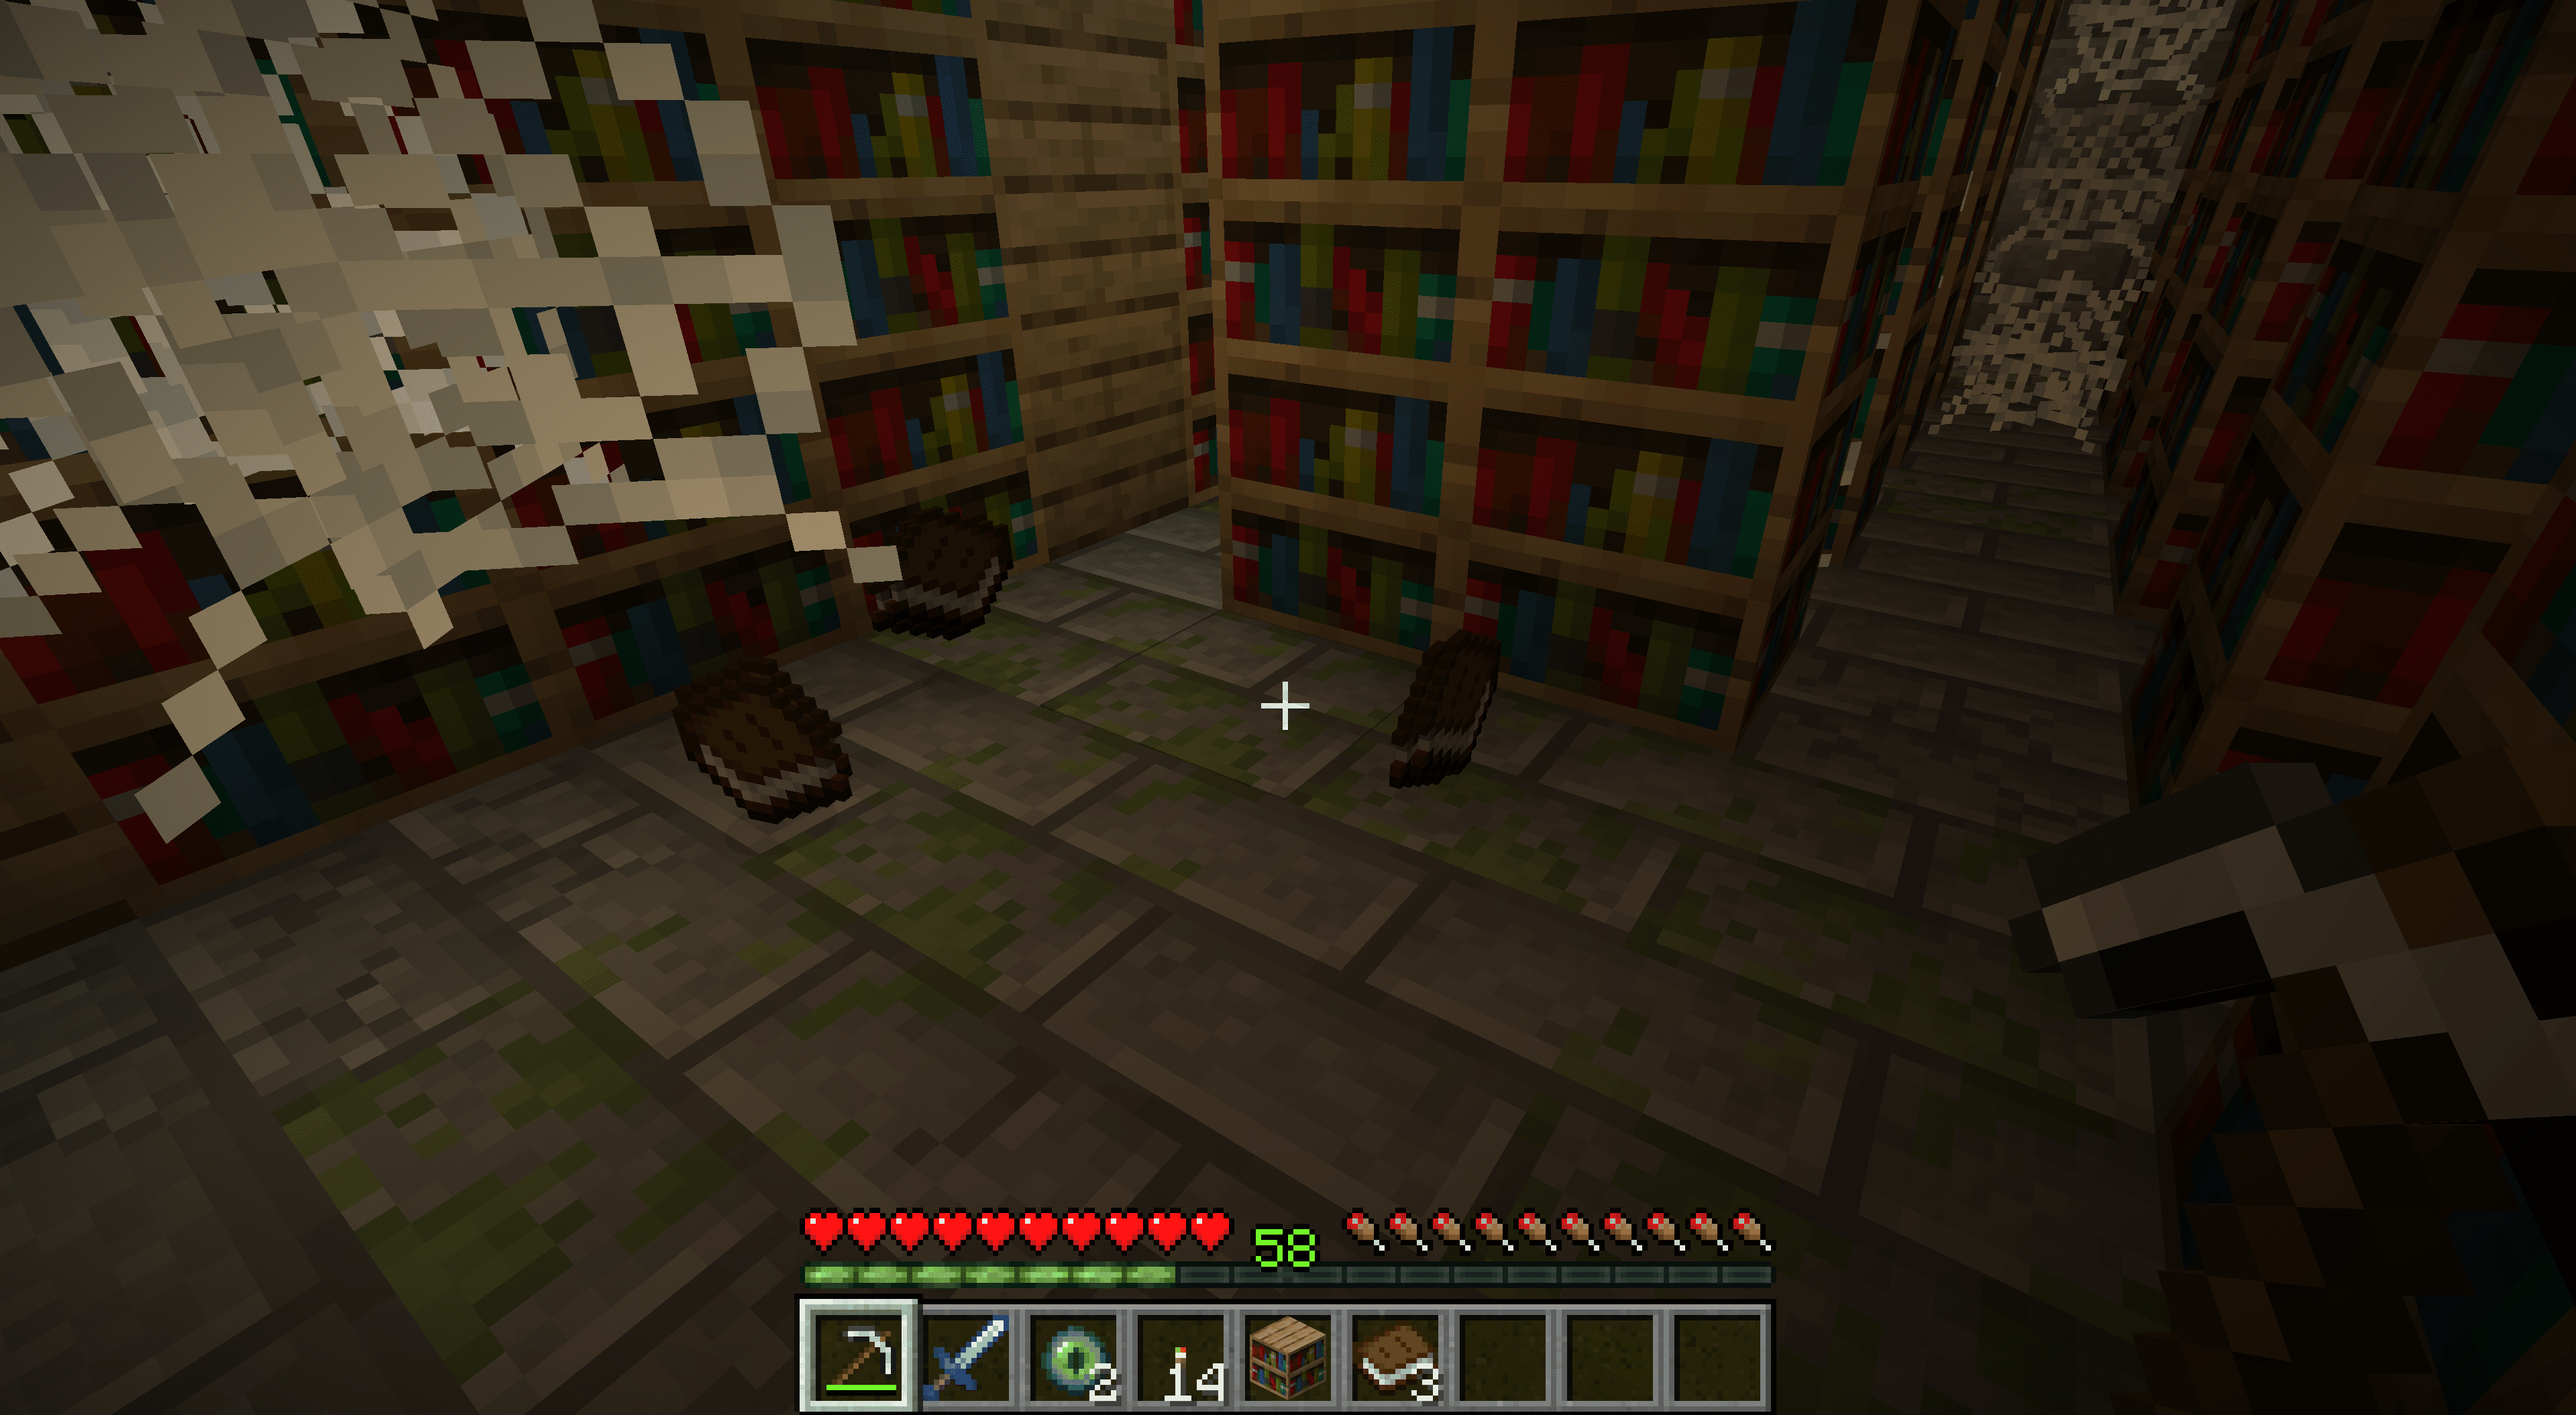 Trasiga bokhyllor som gav böcker i Minecraft.